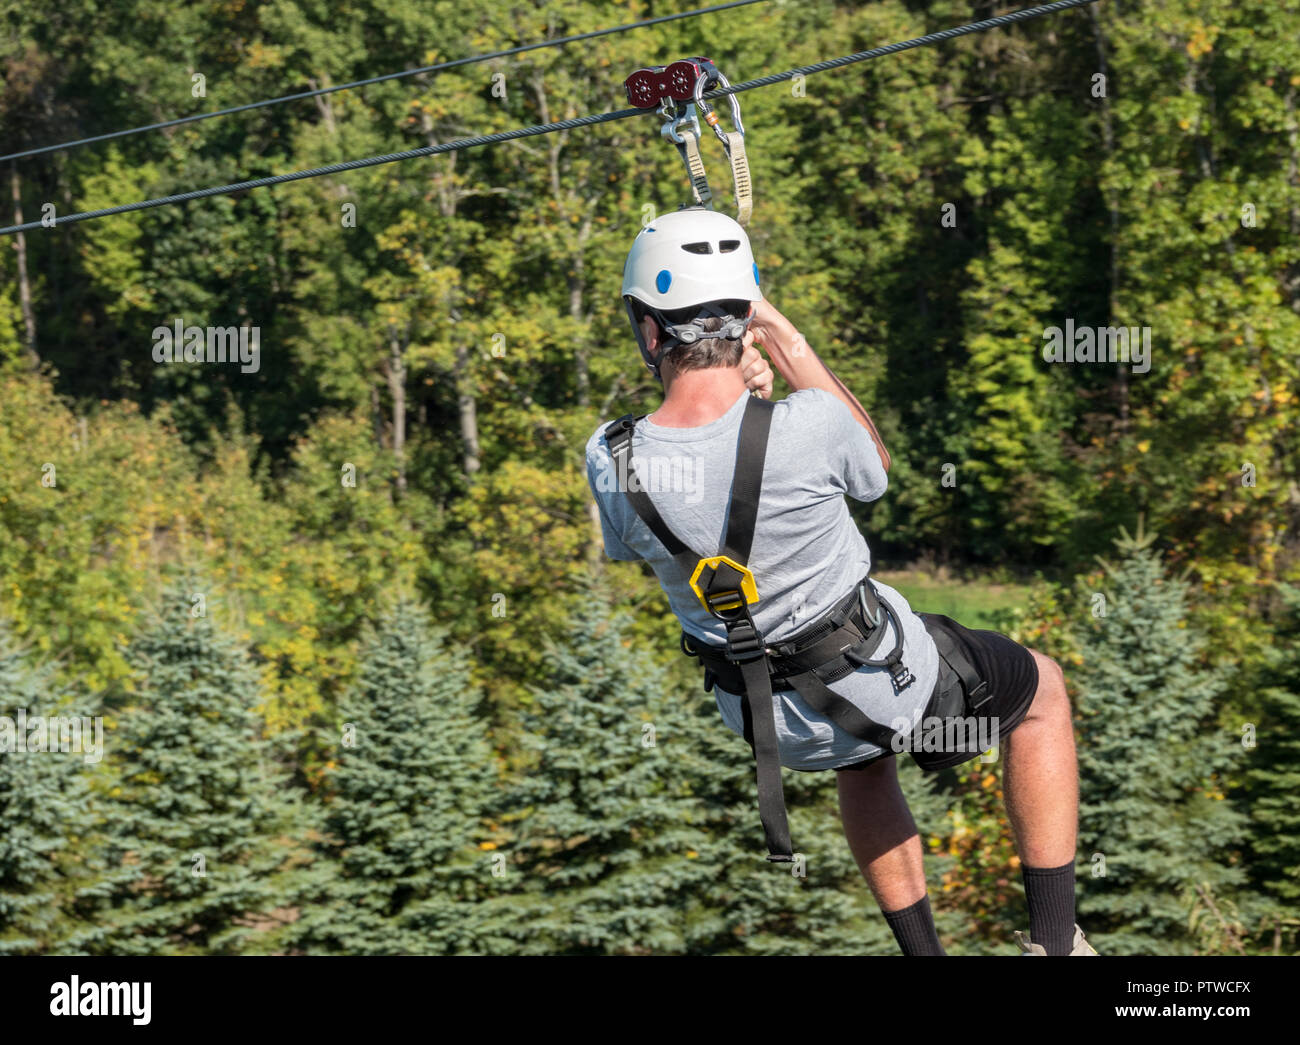 Ansicht von hinten von einem Mann auf einem Zipline, einem Tal im Wald Stockfoto